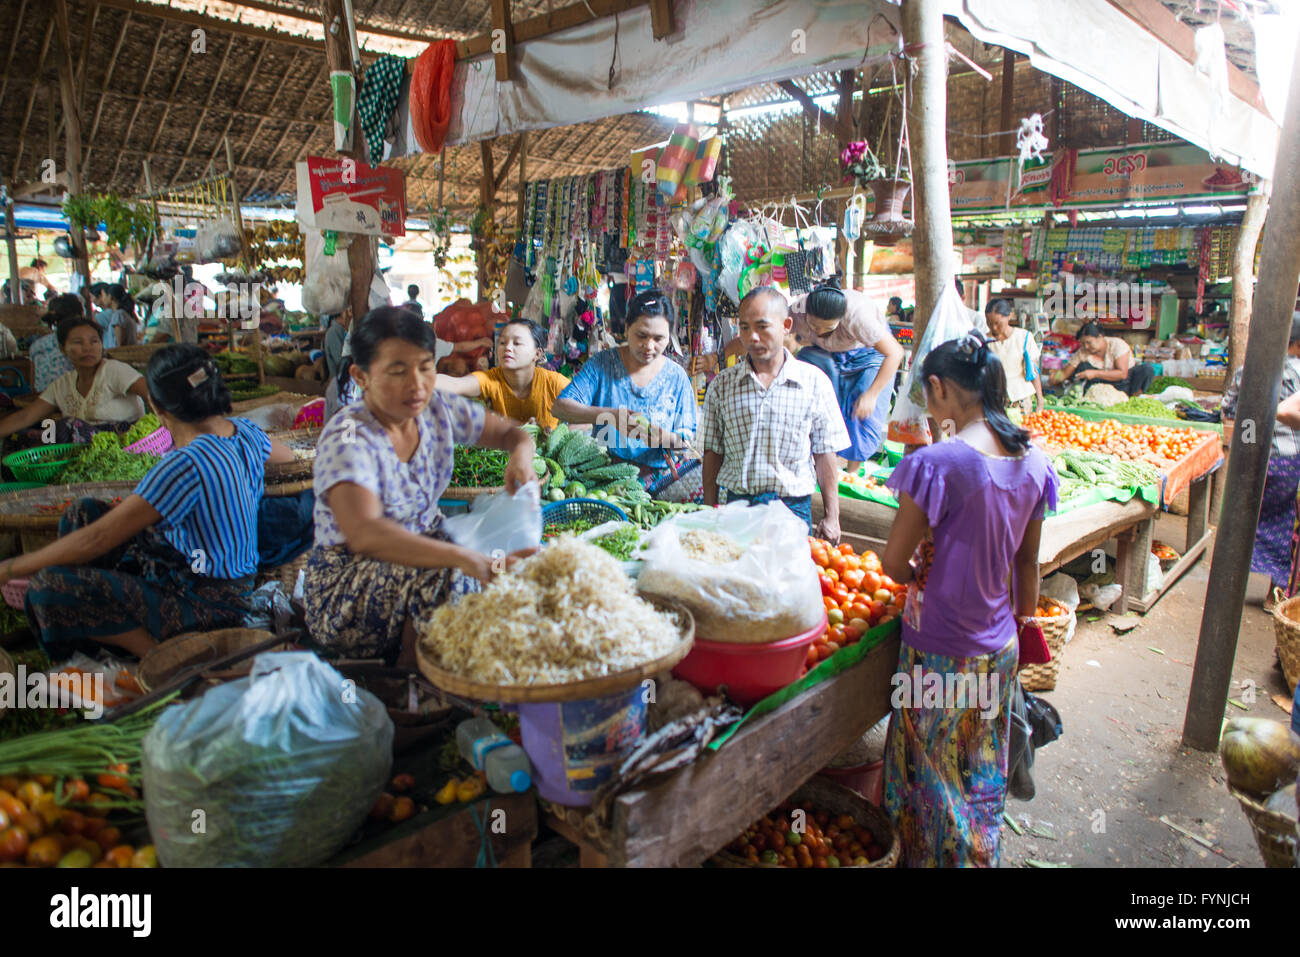 NYAUNG-U, Myanmar - frutta e verdura fresca per la vendita a Nyaung-U Mercato, vicino a Bagan, Myanmar (Birmania). Il mercato è anche noto come Mani Sithu mercato. Foto Stock